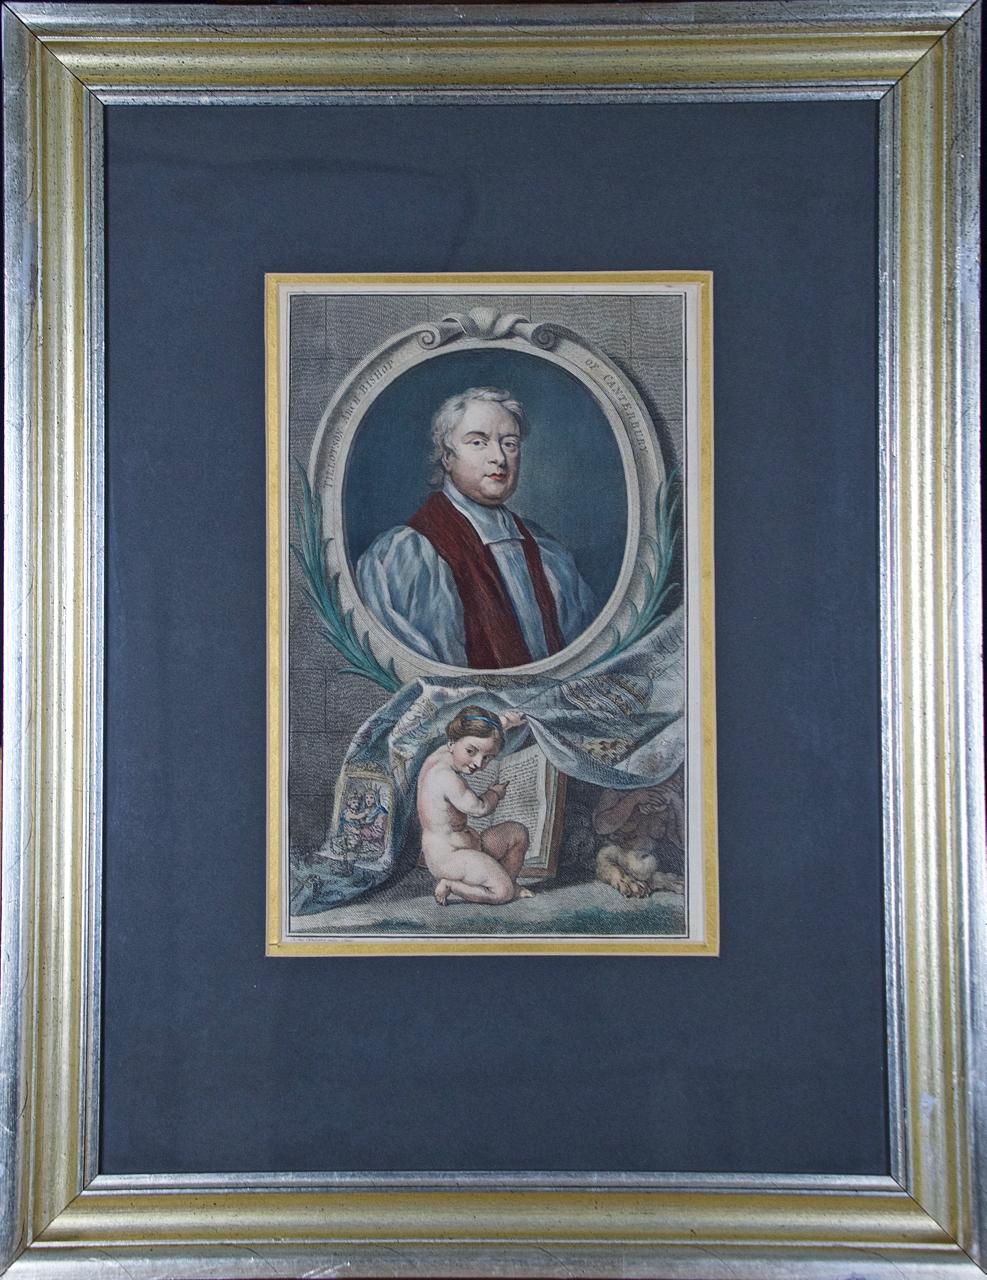 Tillotson, Erzbischof von Canterbury: Ein handkoloriertes Porträt aus dem 18. Jahrhundert von Kneller